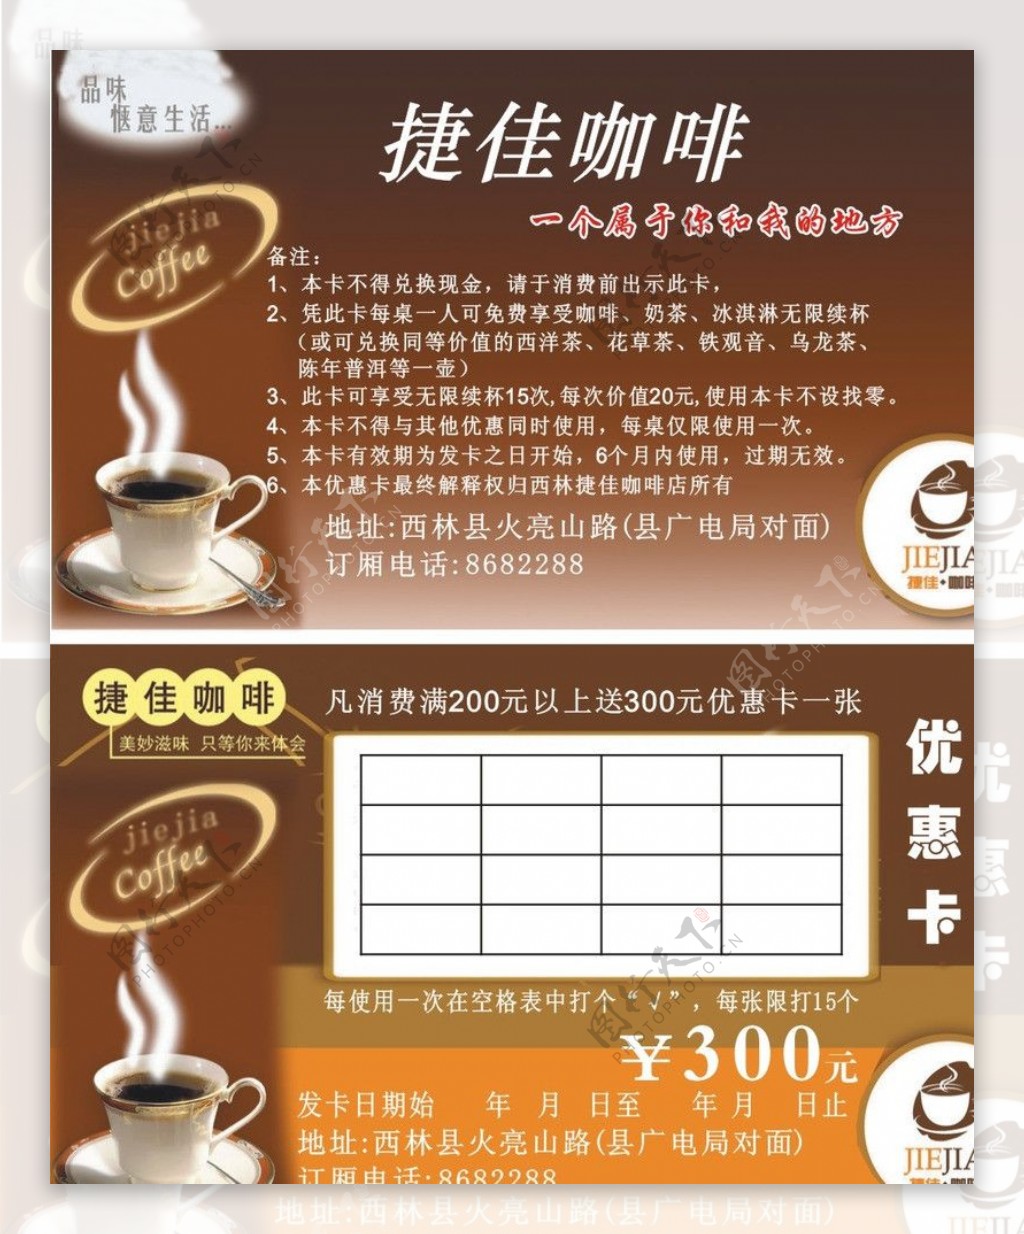 捷佳咖啡优惠卡图片